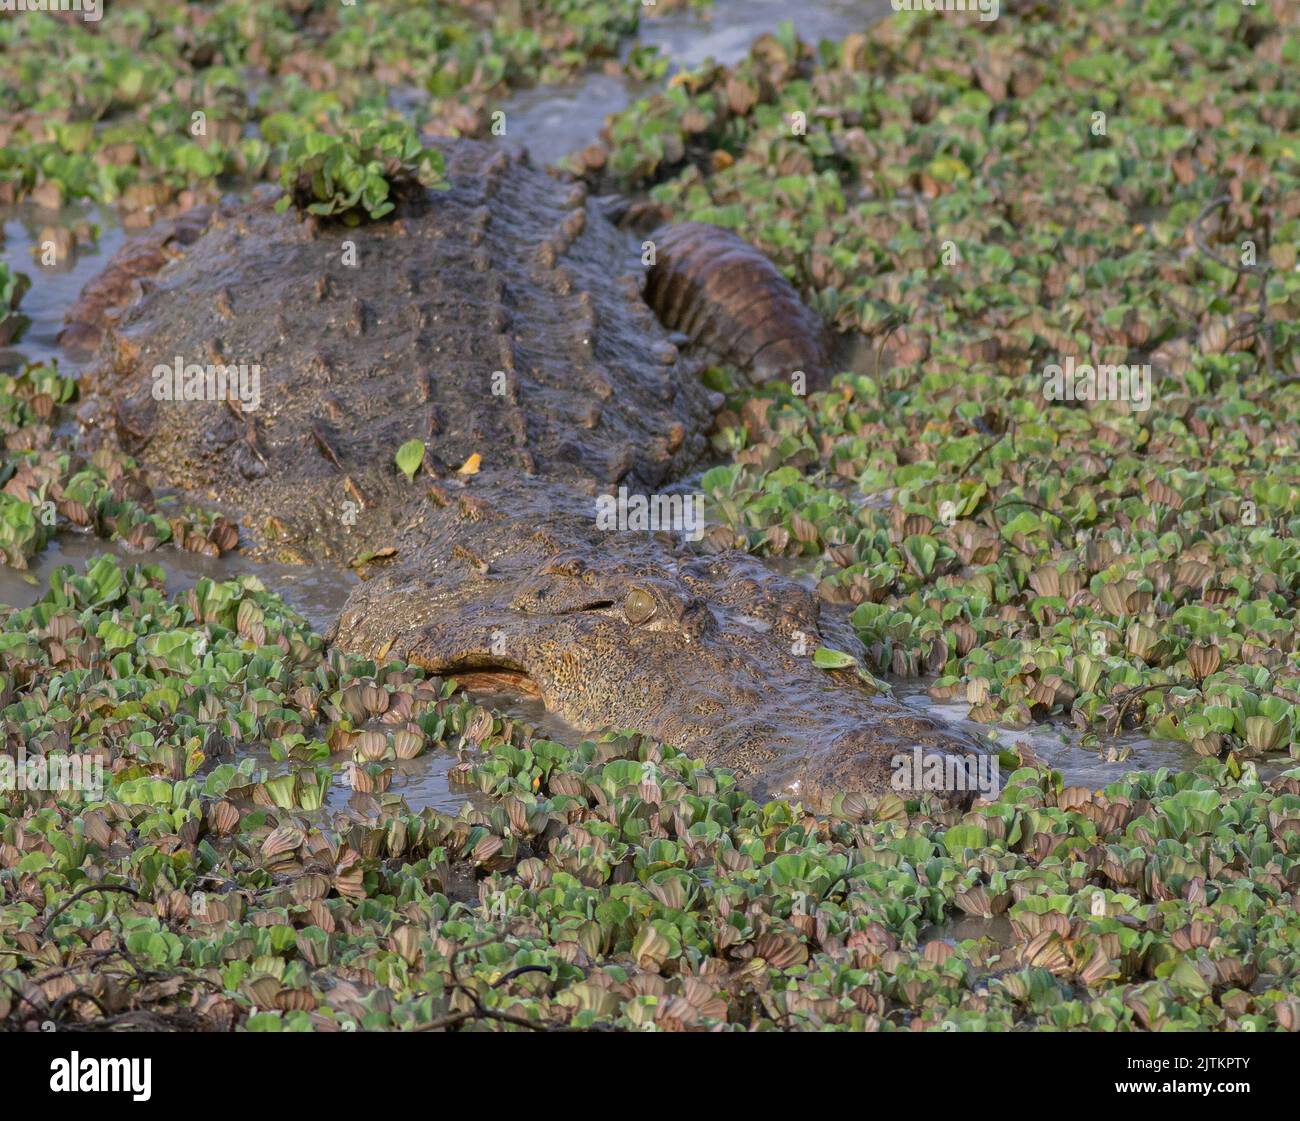 Crocodile on a feeding; croc feeding on fish in the water; crocodile on the marsh; Crocodile feasting on a meal; crocodiles resting; mugger crocodile Stock Photo